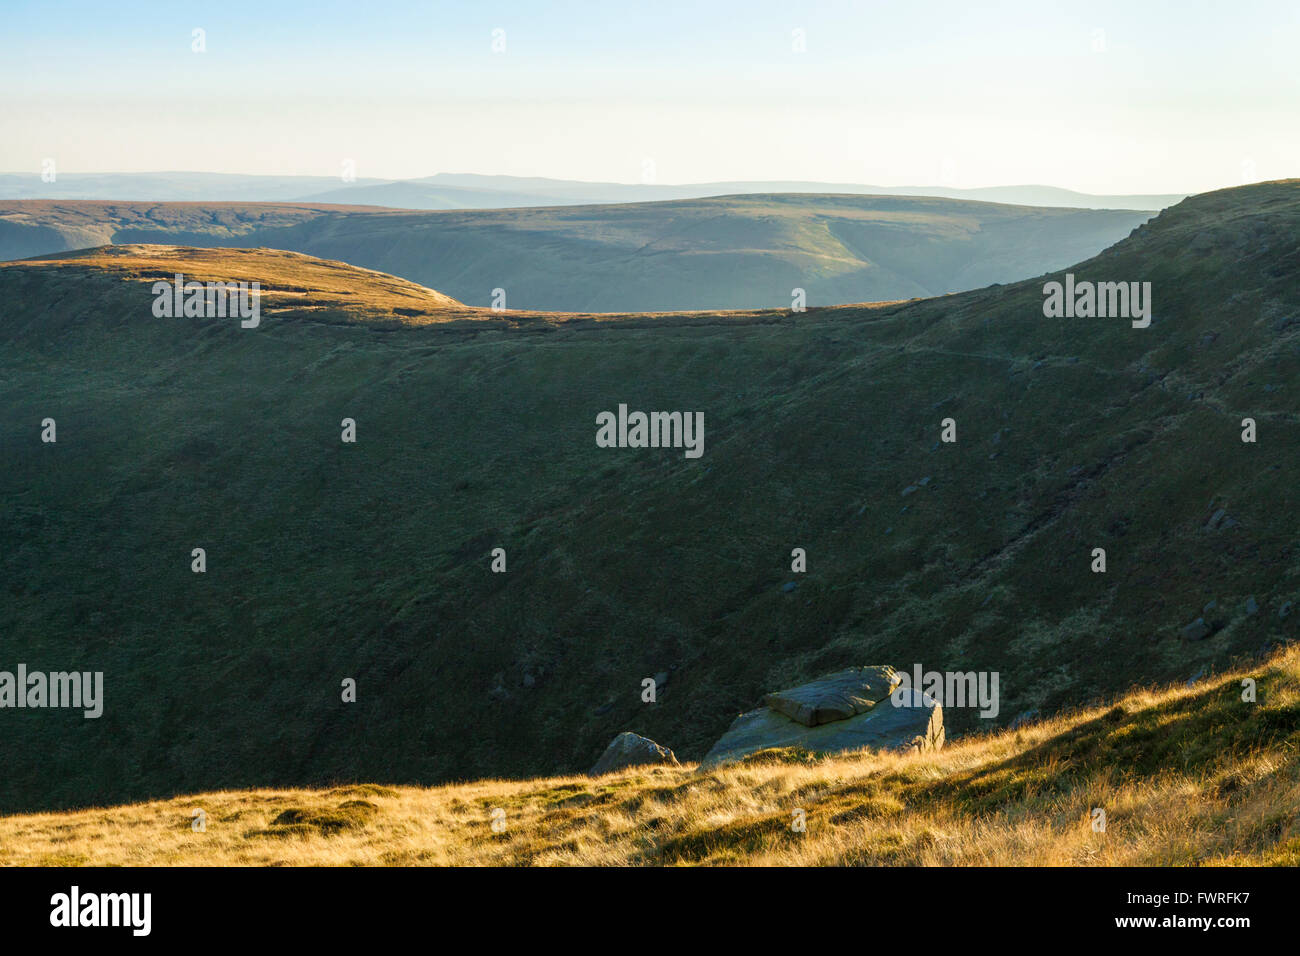 Paesaggi DEL REGNO UNITO: Autunno cattura la luce del sole sulle cime delle colline e la brughiera intorno Crowden Clough su Kinder Scout, Derbyshire, Peak District, England, Regno Unito Foto Stock